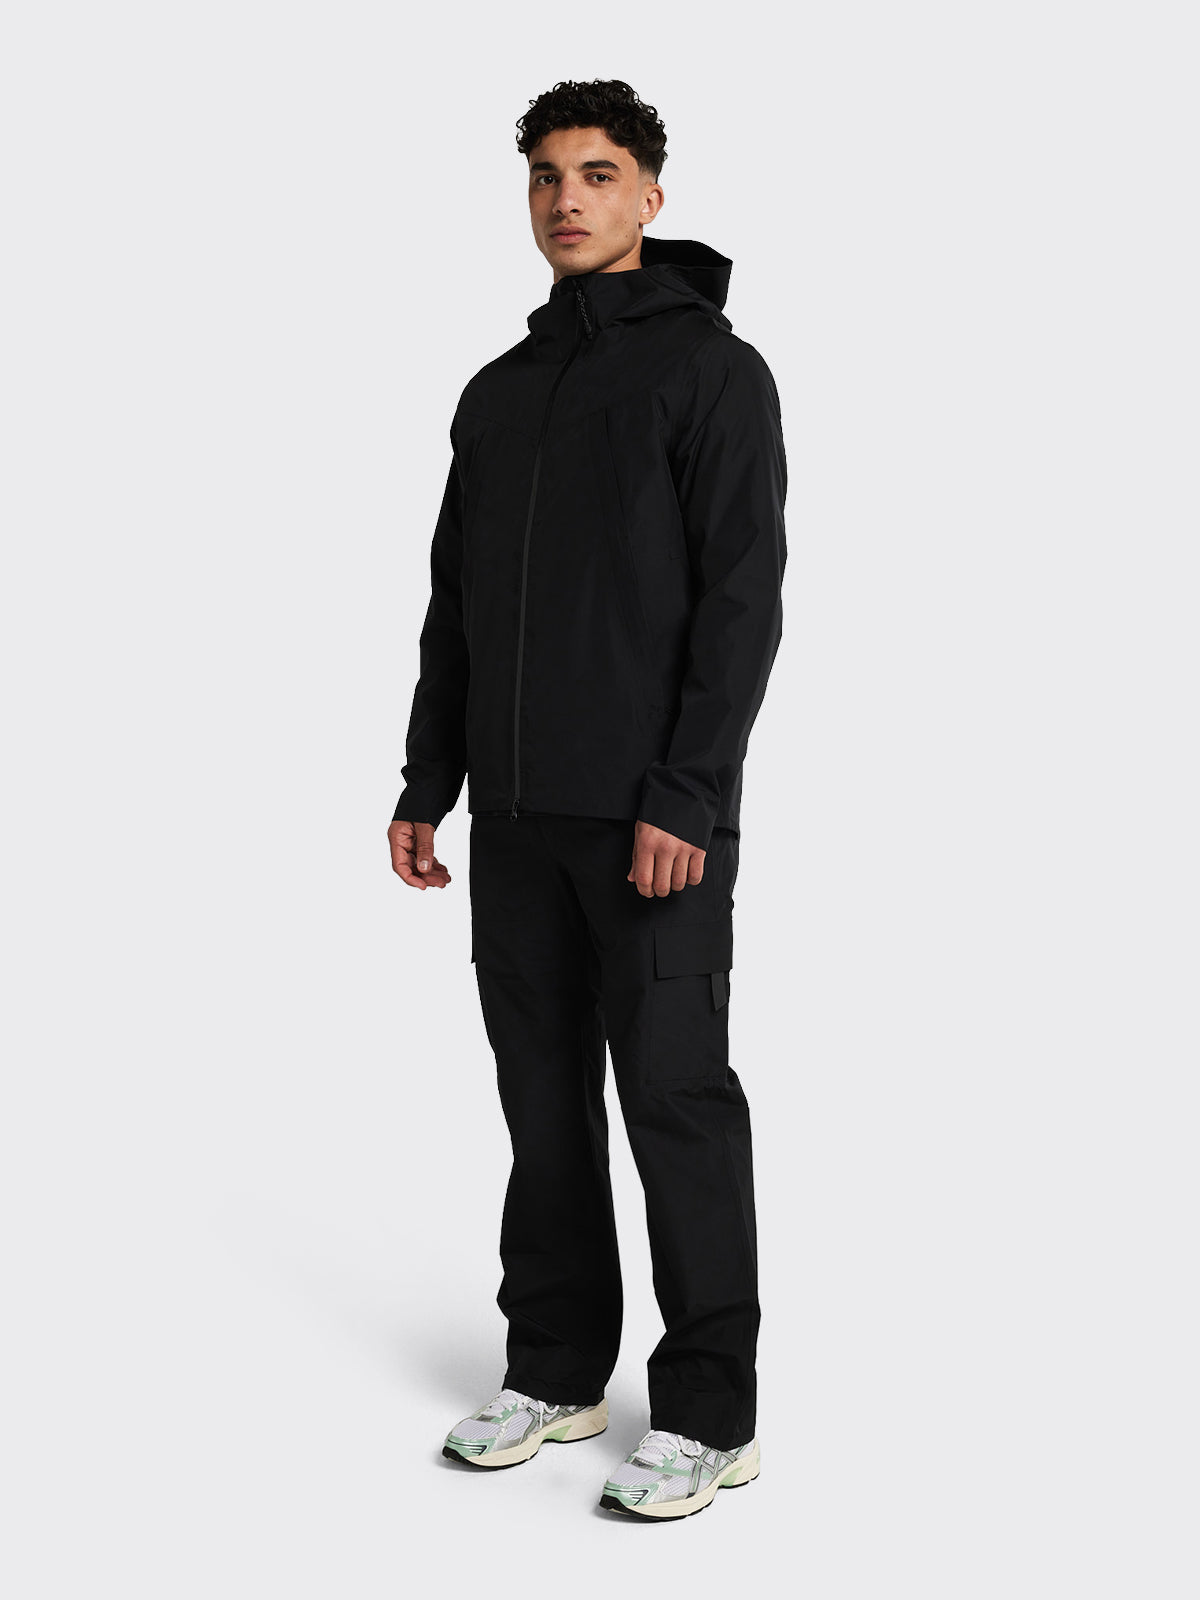 Man wearing Helleren RS jacket from Blæst in Black